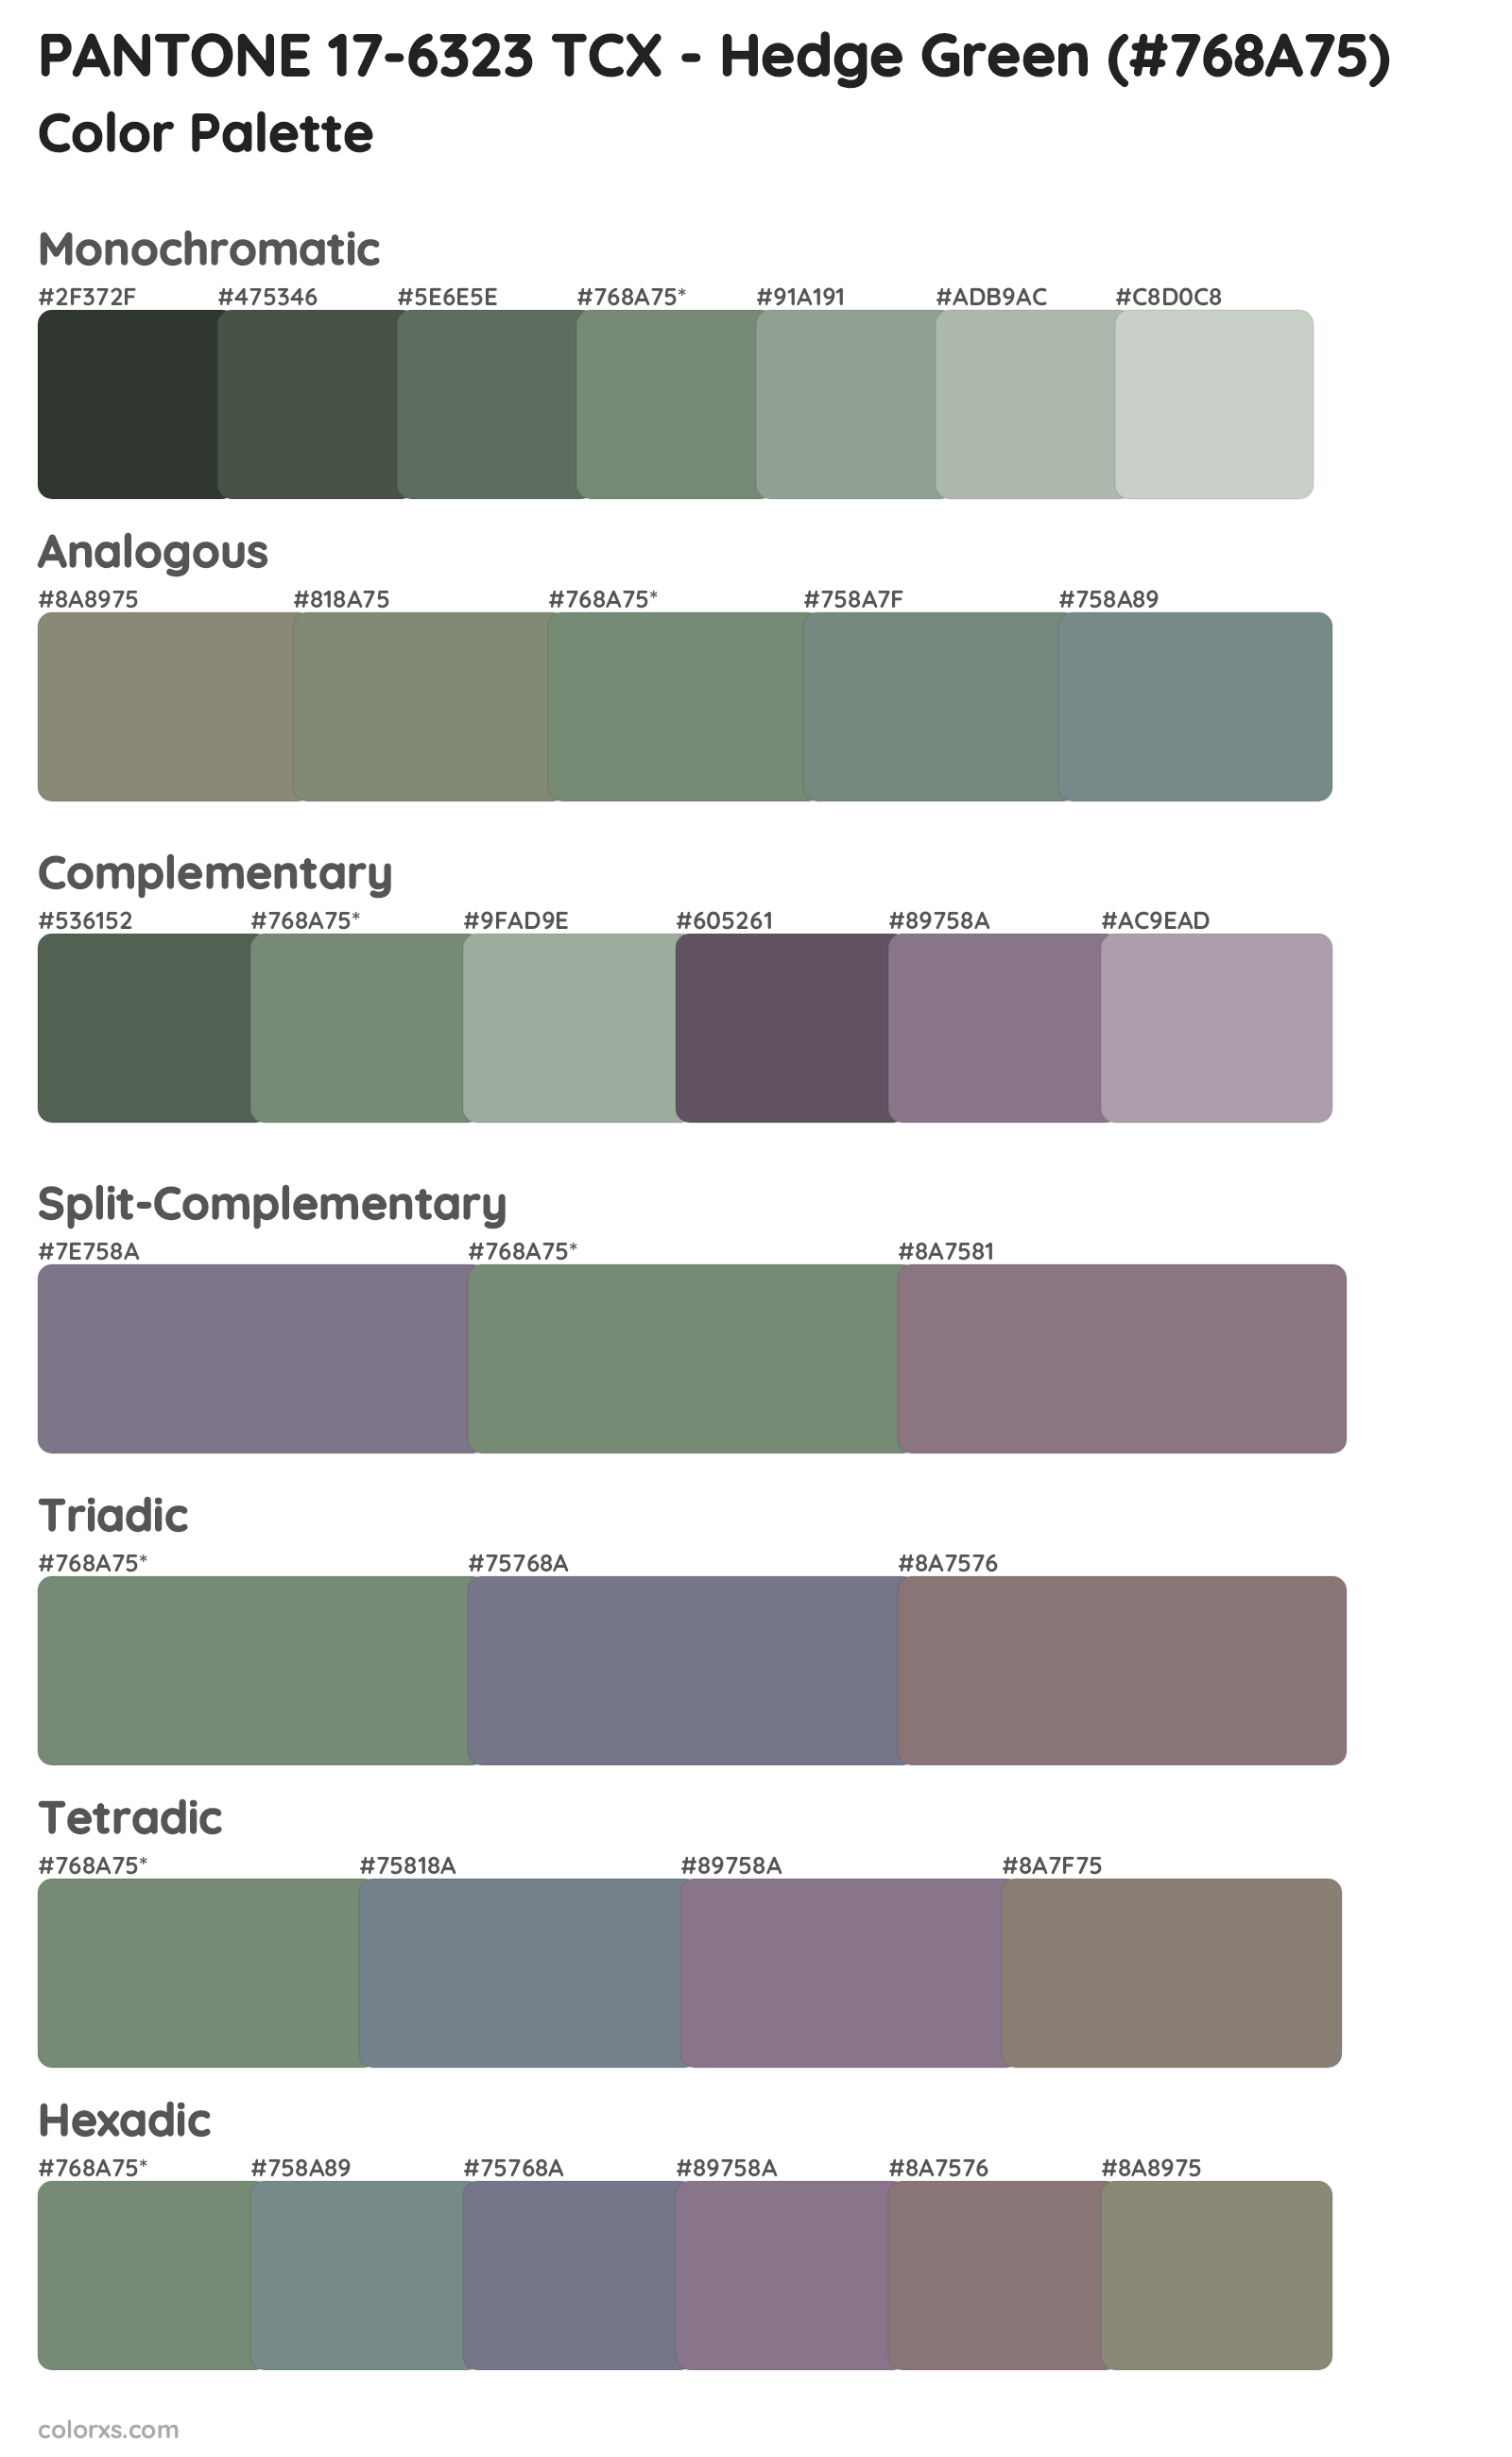 PANTONE 17-6323 TCX - Hedge Green Color Scheme Palettes